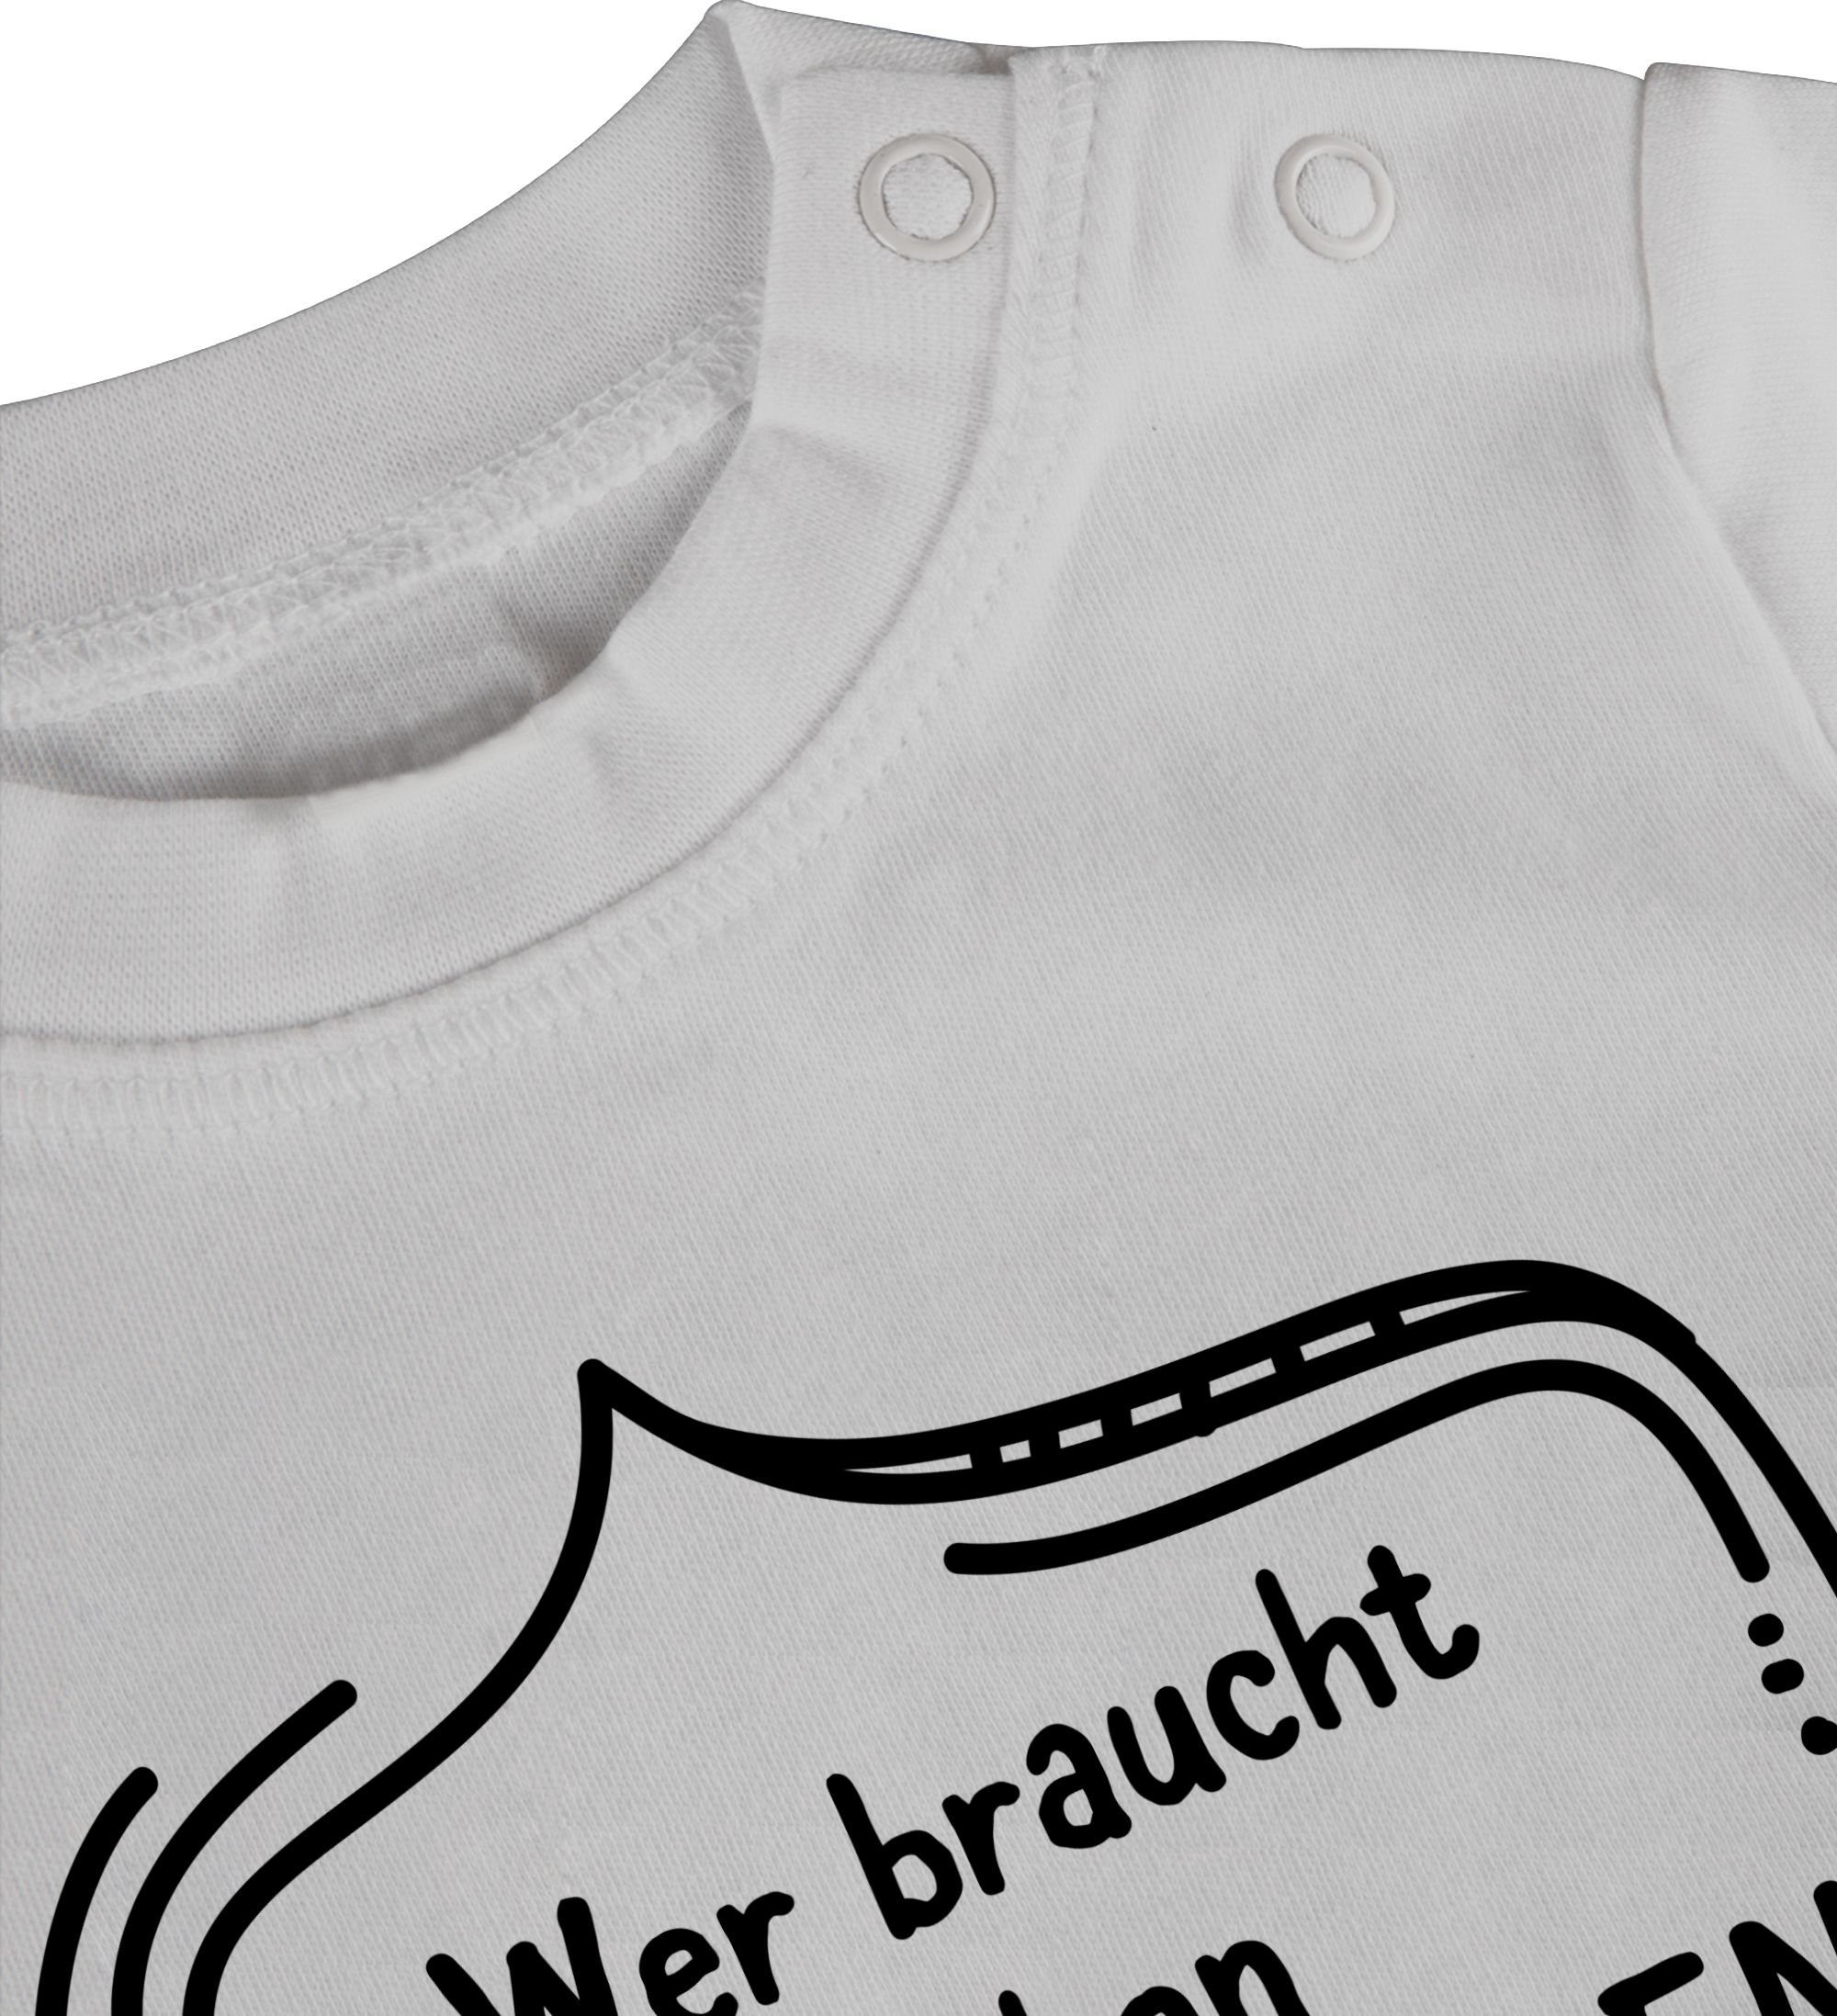 Weiß T-Shirt 1 schon Superhelden als Vatertag wenn hat Wer Shirtracer Geschenk braucht Papa Baby dich man